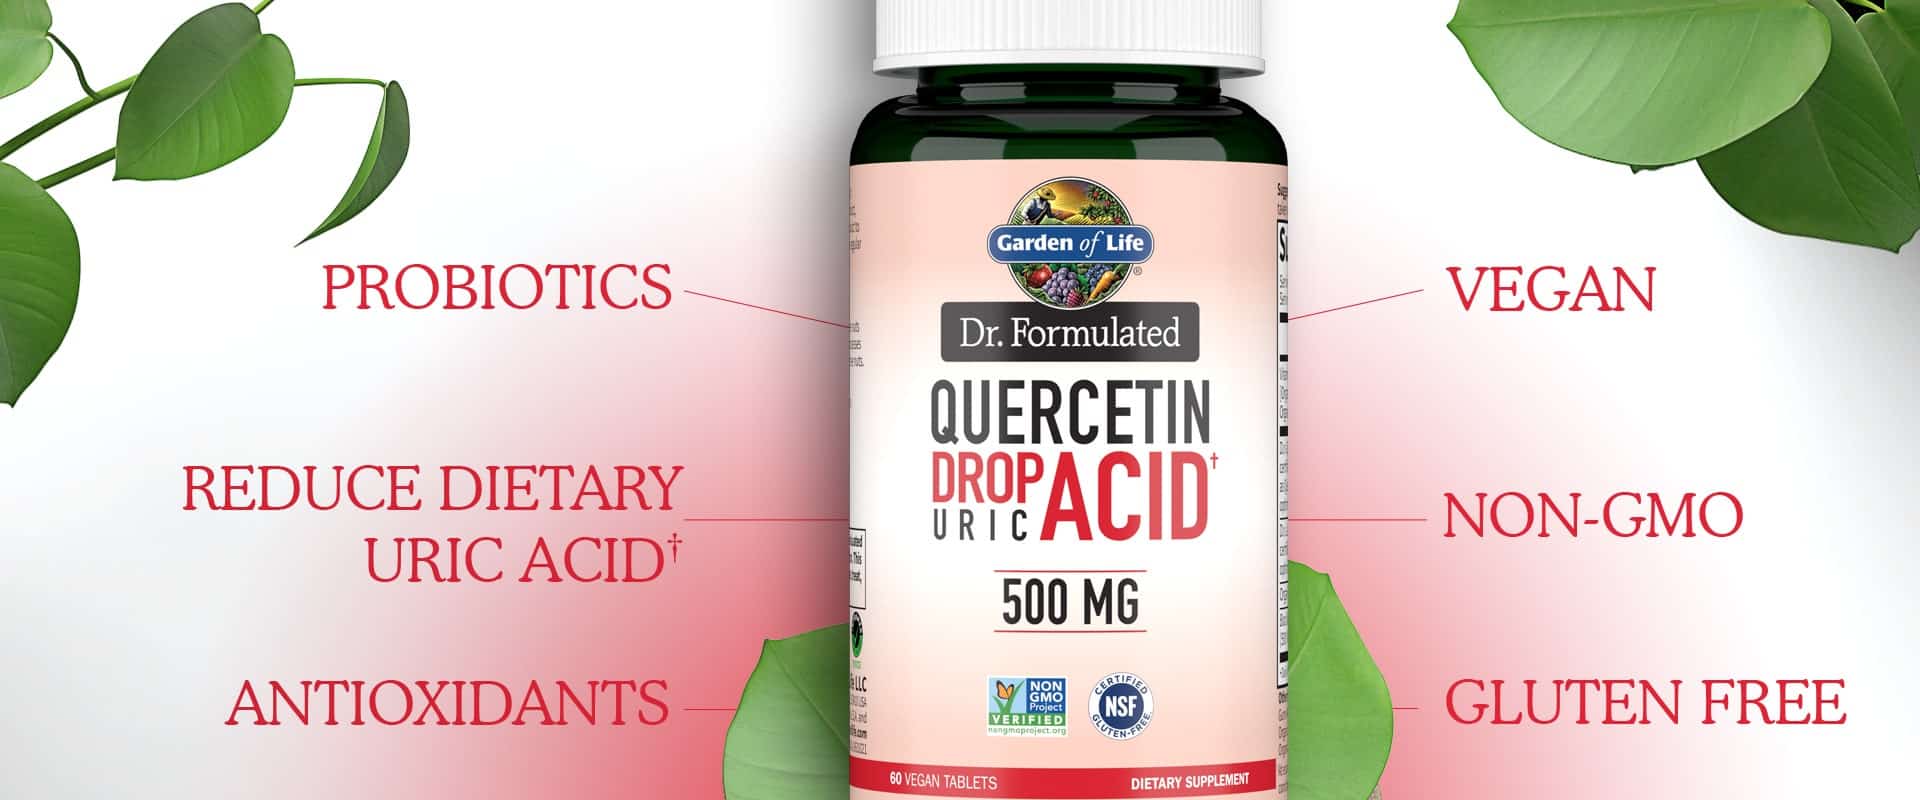 dr formulerede 500mg Quercetin Drop Uric Acid af Garden of Life